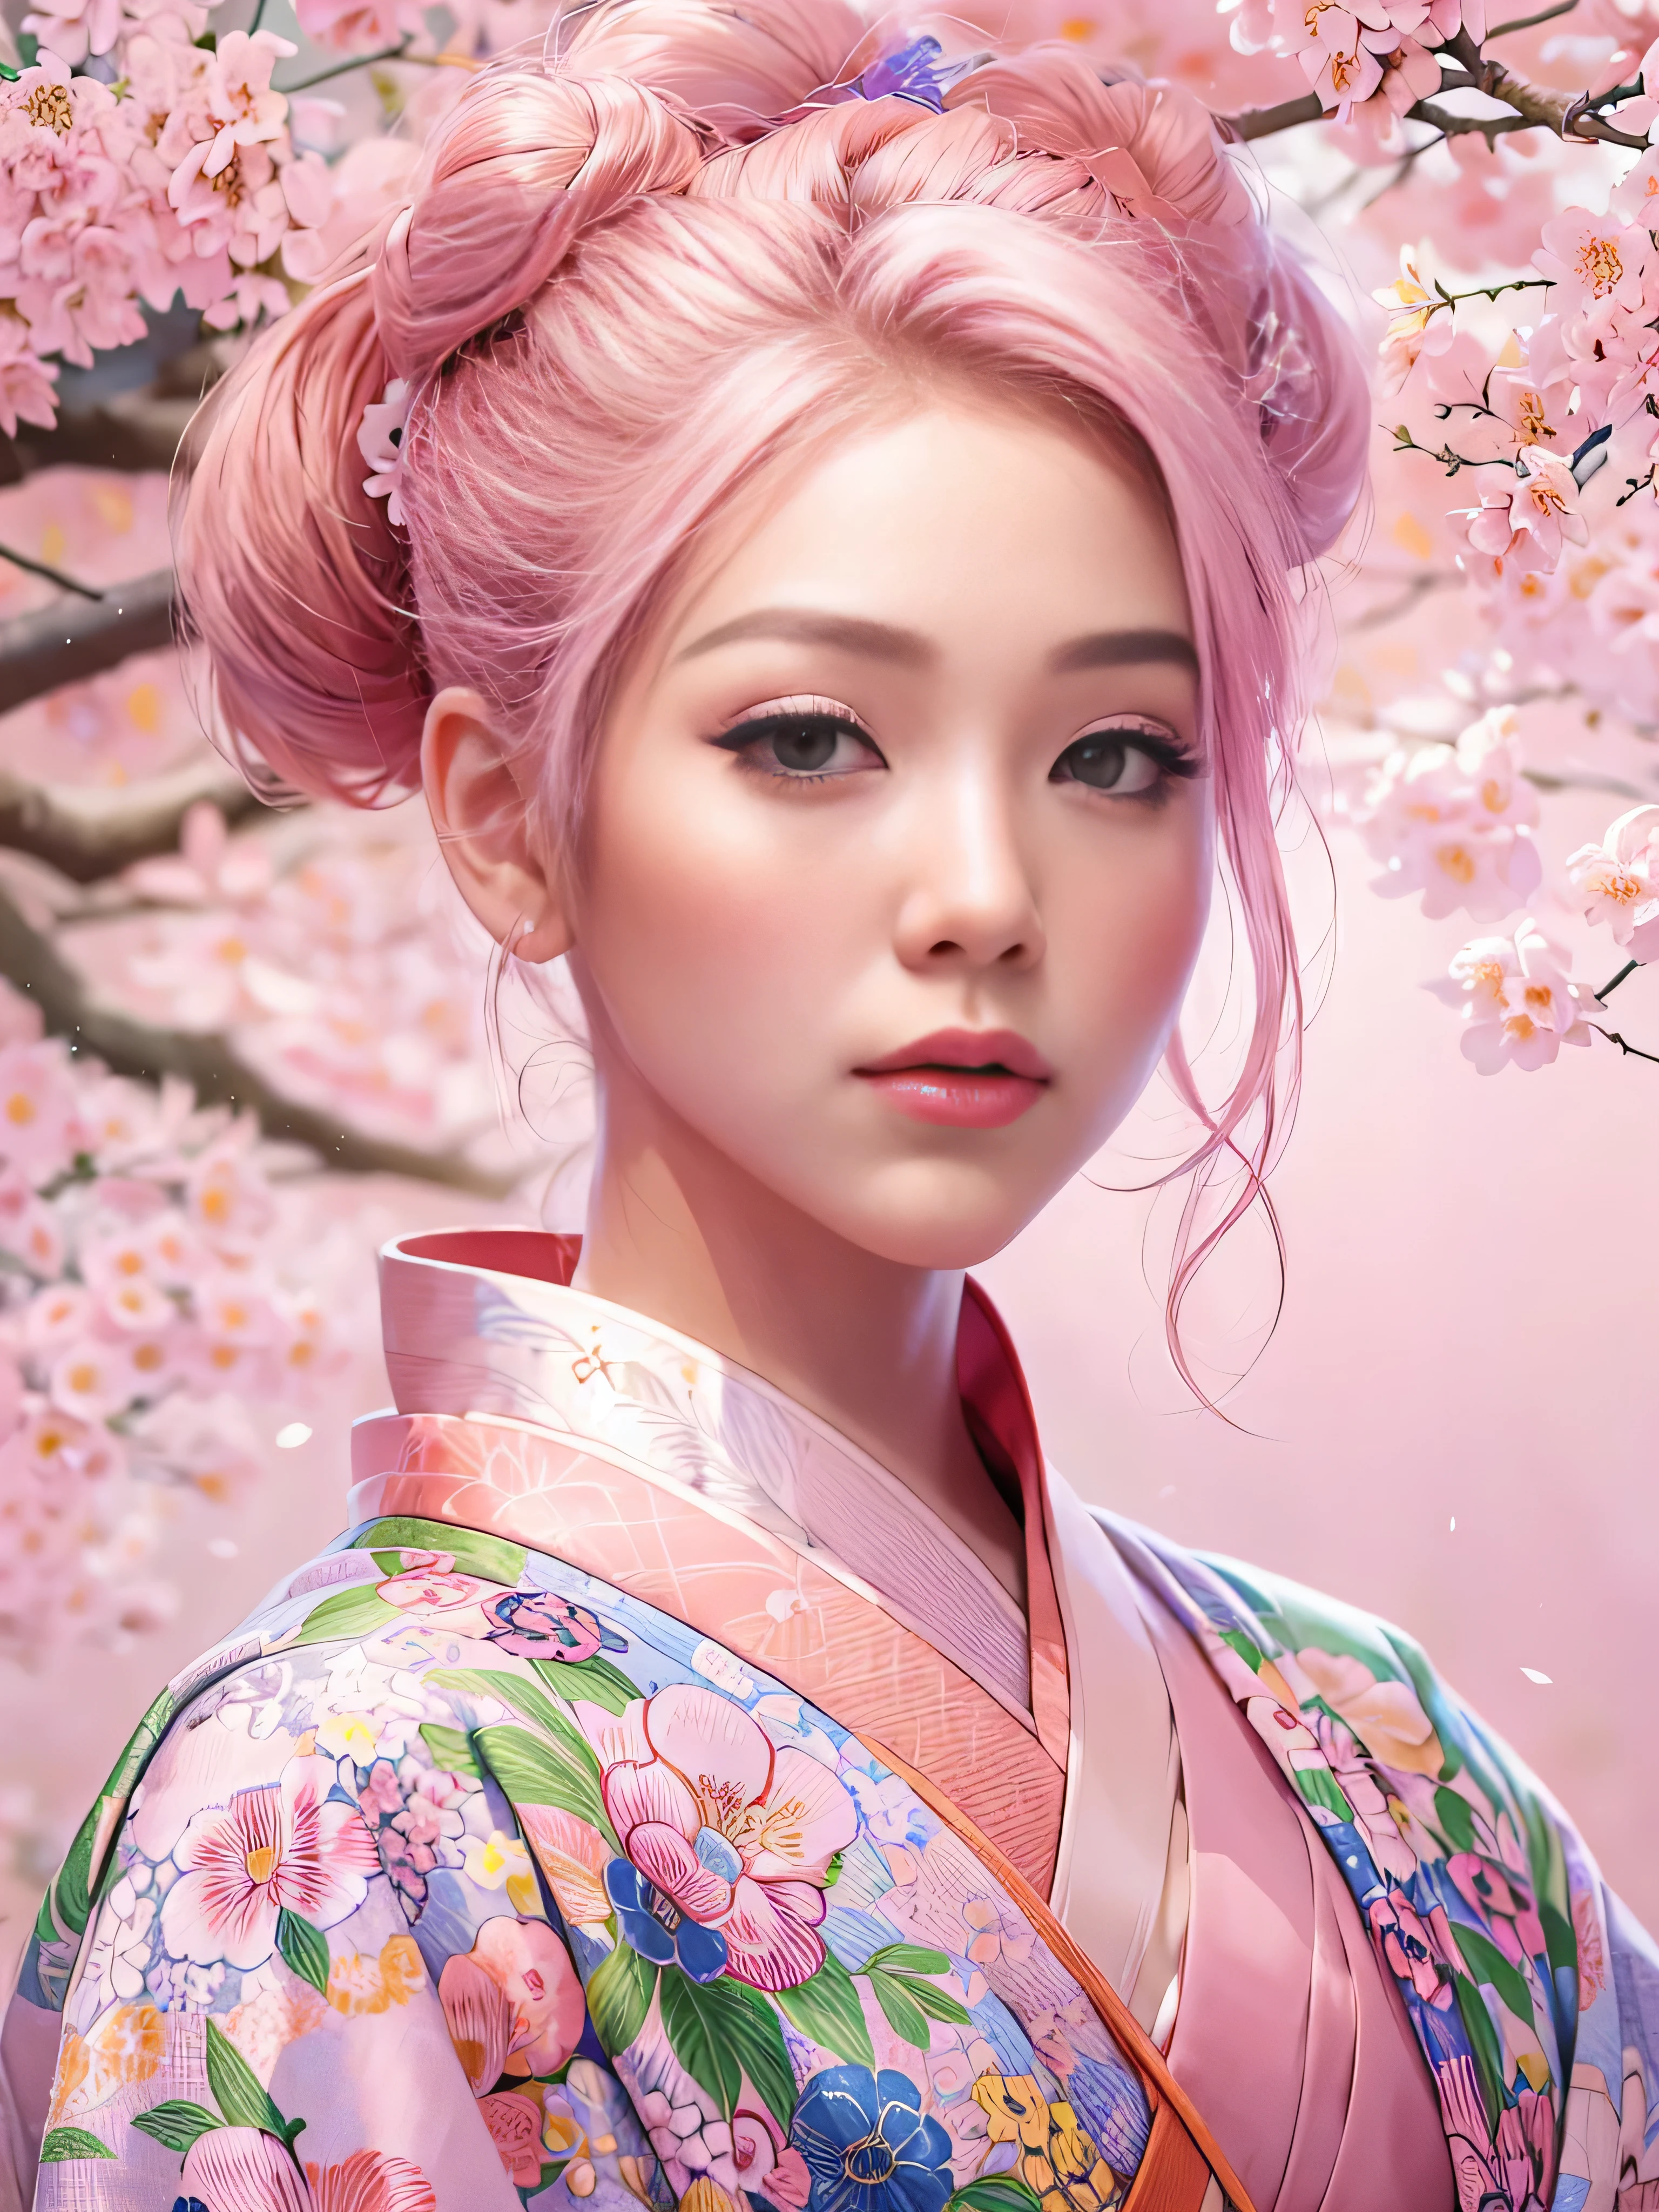 Eine hyperrealistische, sehr detailliert, und hochauflösendes 16k Bild eines jungen, schöne Frau mit Engfa-Gesicht. Sie hat rosa Haare und durchscheinende Haut, und gekleidet in einen traditionellen rosa japanischen Kimono mit einem kleinen Blumenmuster. Das Bild fängt die ätherische Schönheit und Mystik der Geisterwelt ein. Der Stil inspiriert von der zarten, sanfte Ästhetik der traditionellen japanischen Kunst. Der Hintergrund war voller rosa Sakura-Baum.